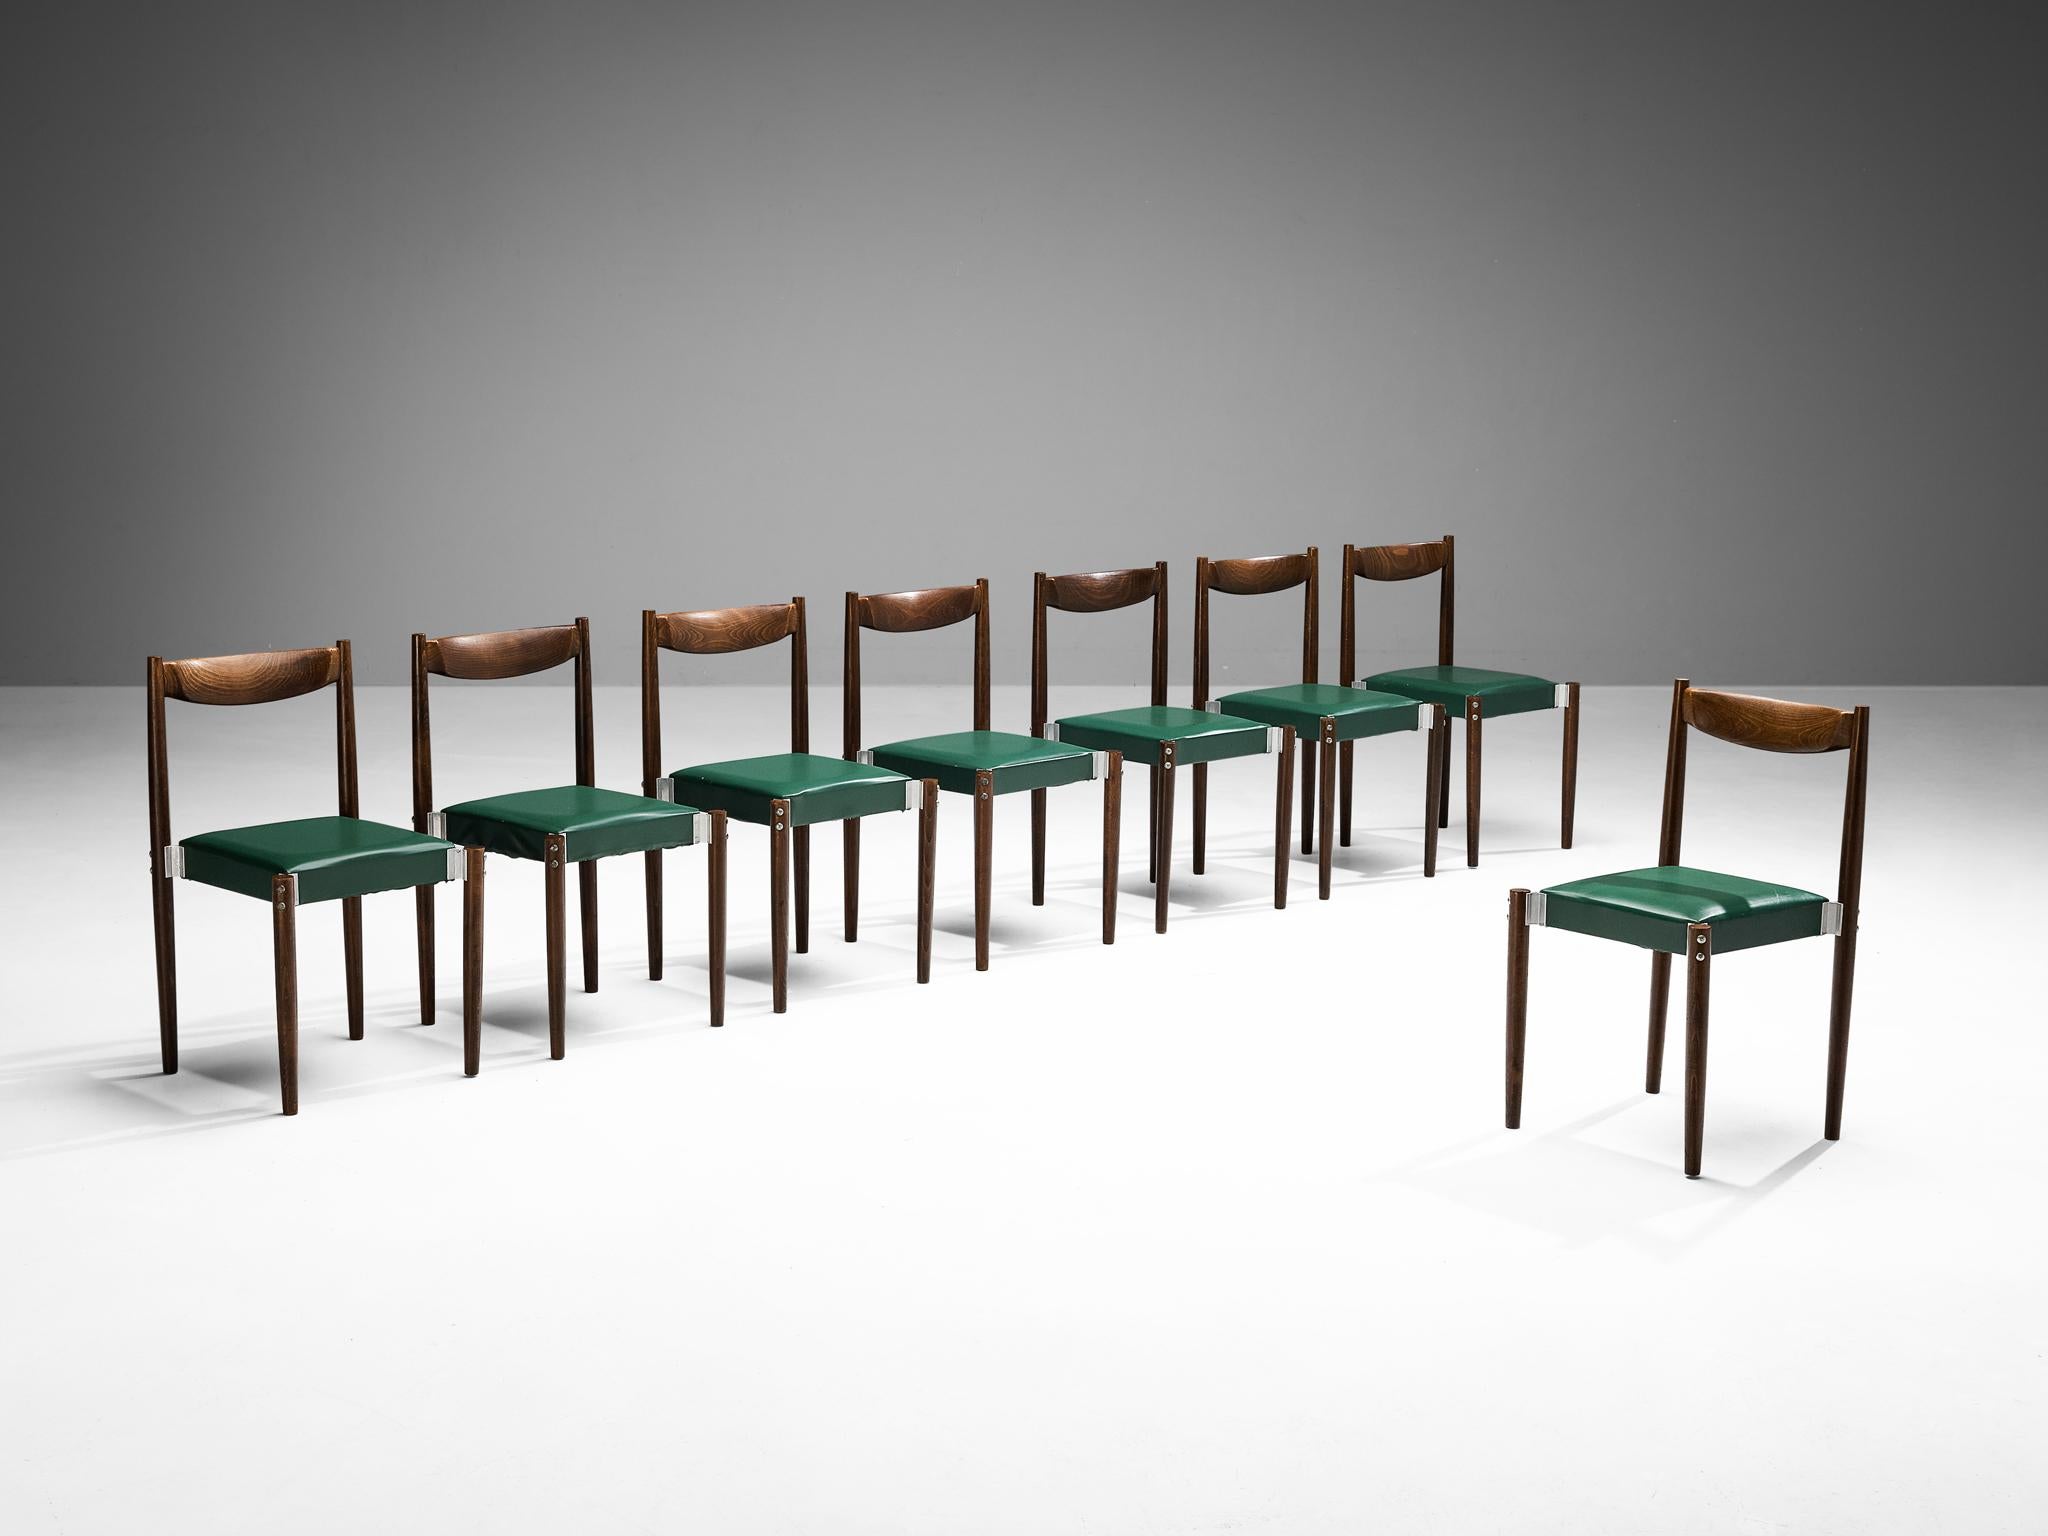 Ensemble de huit chaises de salle à manger, similicuir, hêtre teinté, aluminium, République tchèque, années 1960.

Ensemble de chaises de salle à manger bien proportionnées, avec des détails constructifs perceptibles dans les joints en aluminium qui